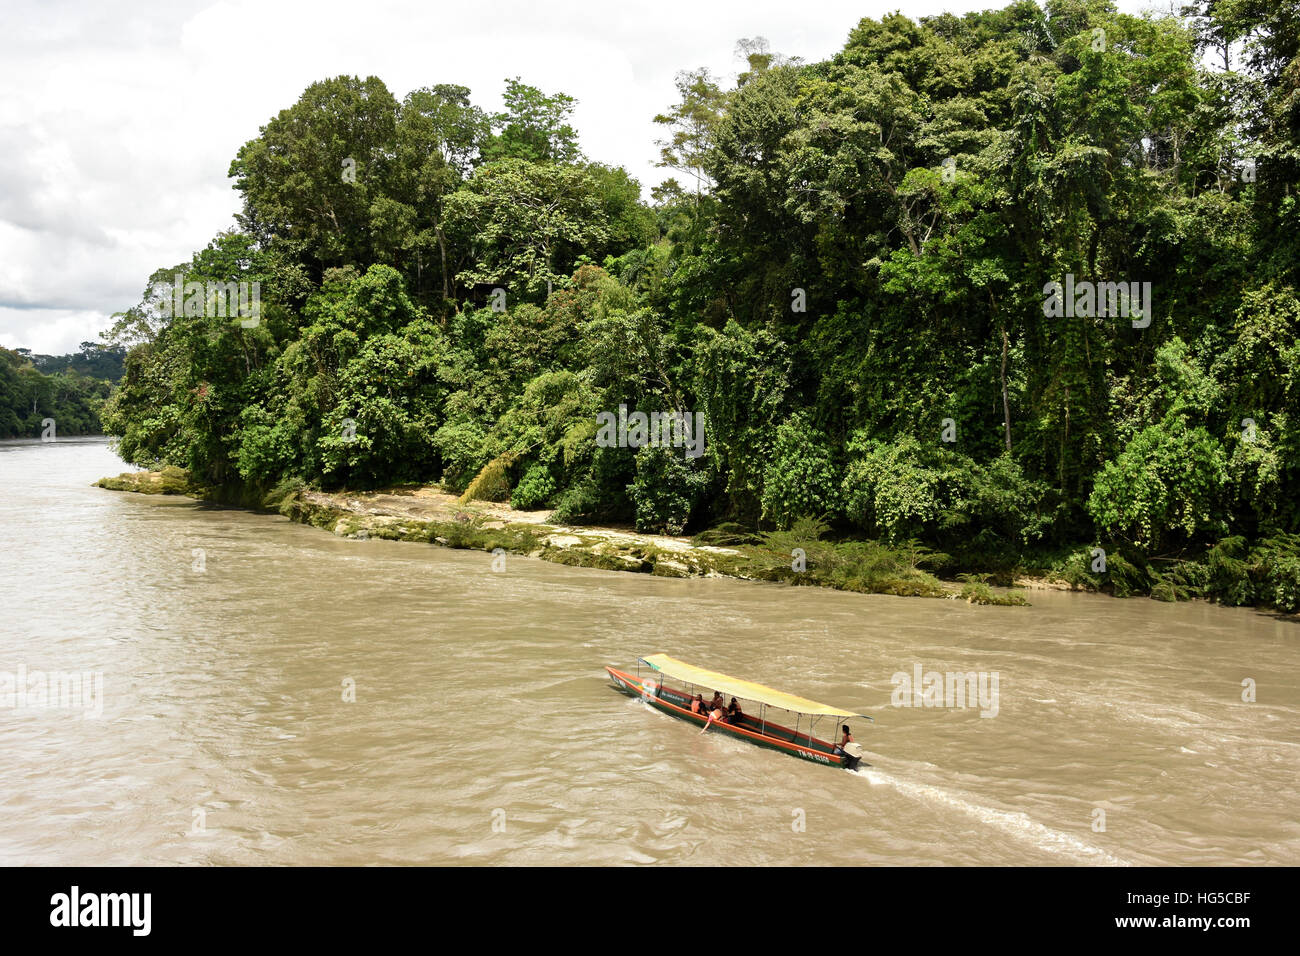 Misahualli in The Oriente, Leiter der Navigation am Rio Napo (Amazon), Ecuador, Südamerika Stockfoto